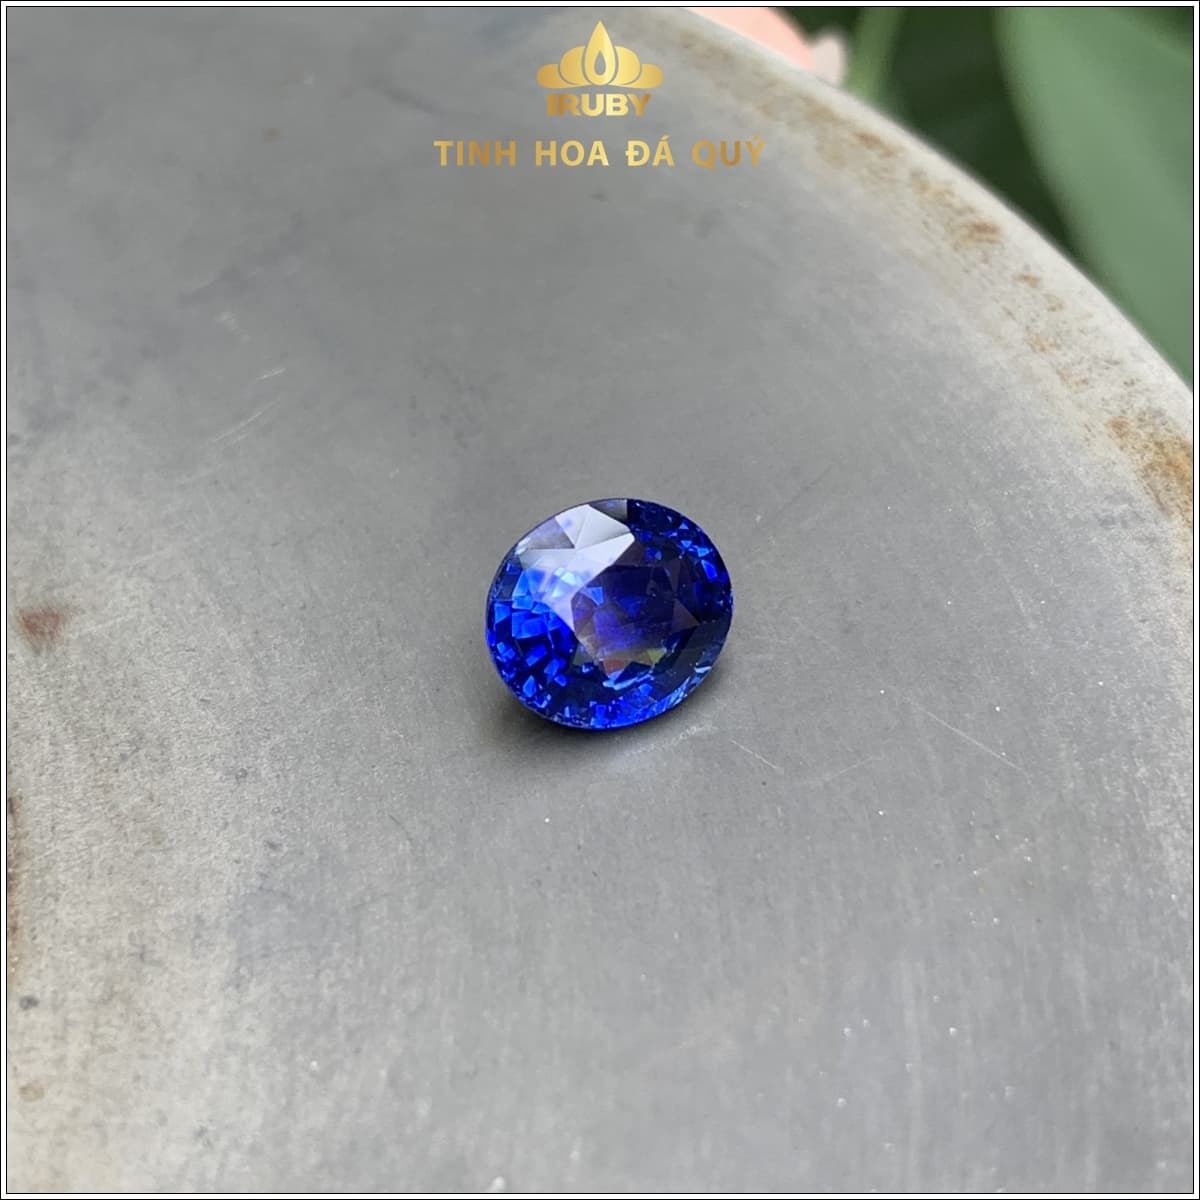 Viên Sapphire màu xanh lam hoàng gia 3,17ct – IRSP 235317